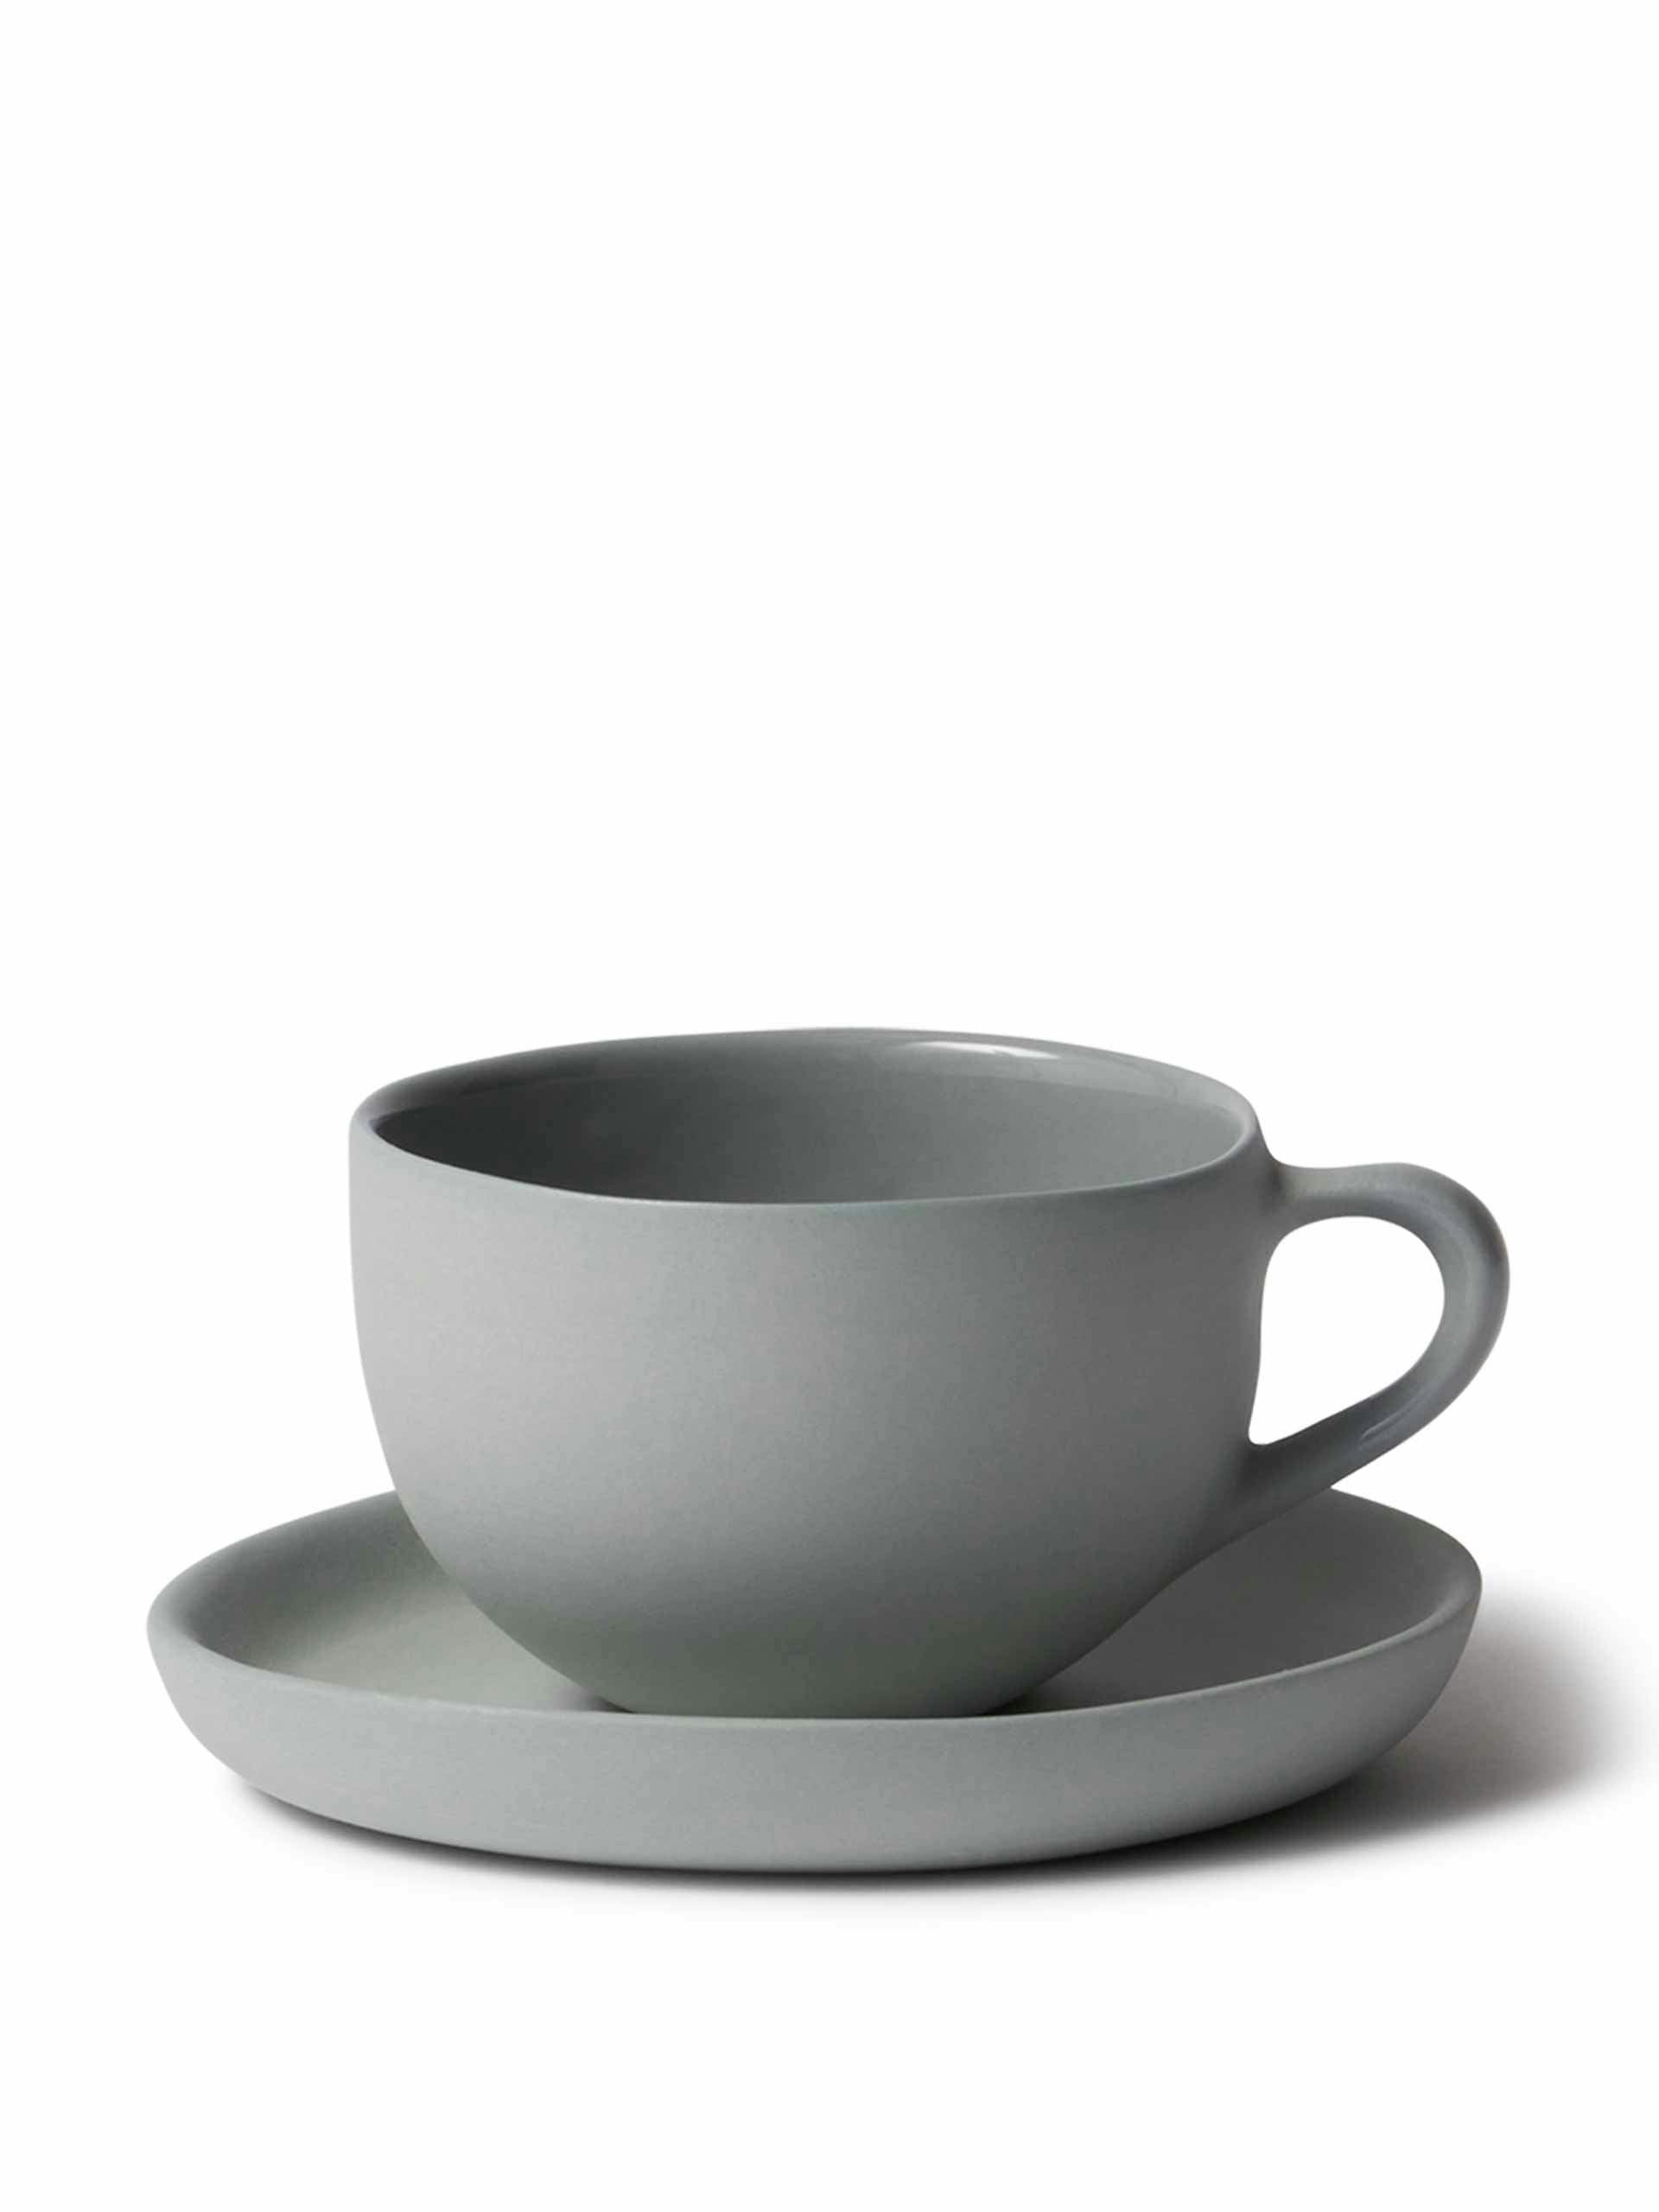 Grey teacup and saucer